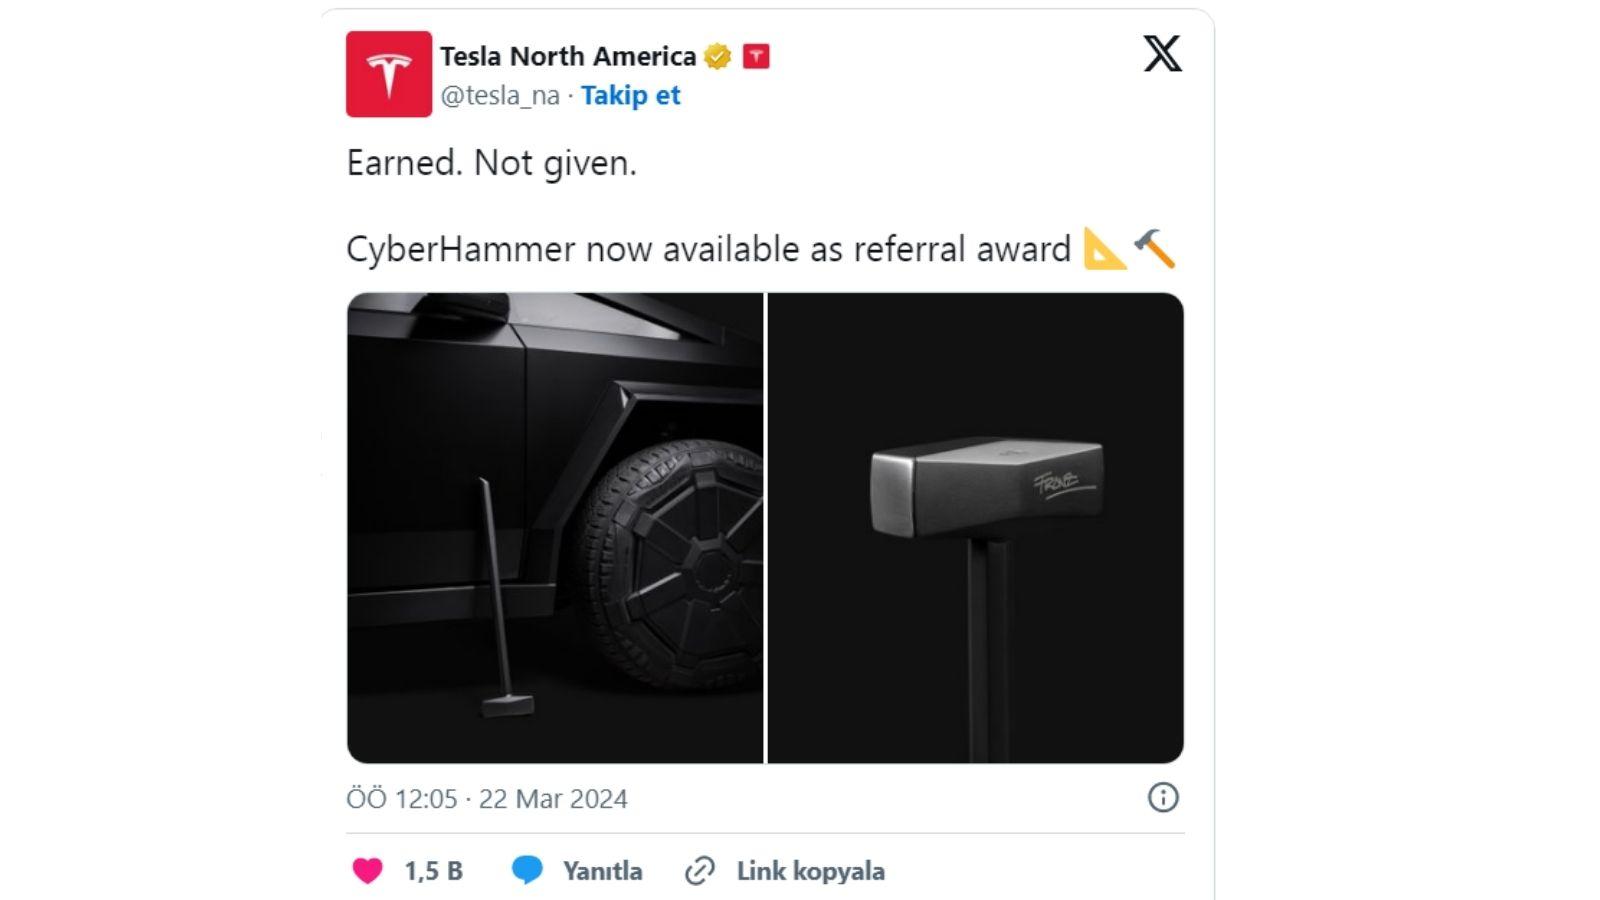 Tesla Cybertruck ilhamlı bir resmi  ‘balyoz’ tasarladı. Şirket bu tarz ilginç ürünleri ile ses getirmeye devam etmekte. 